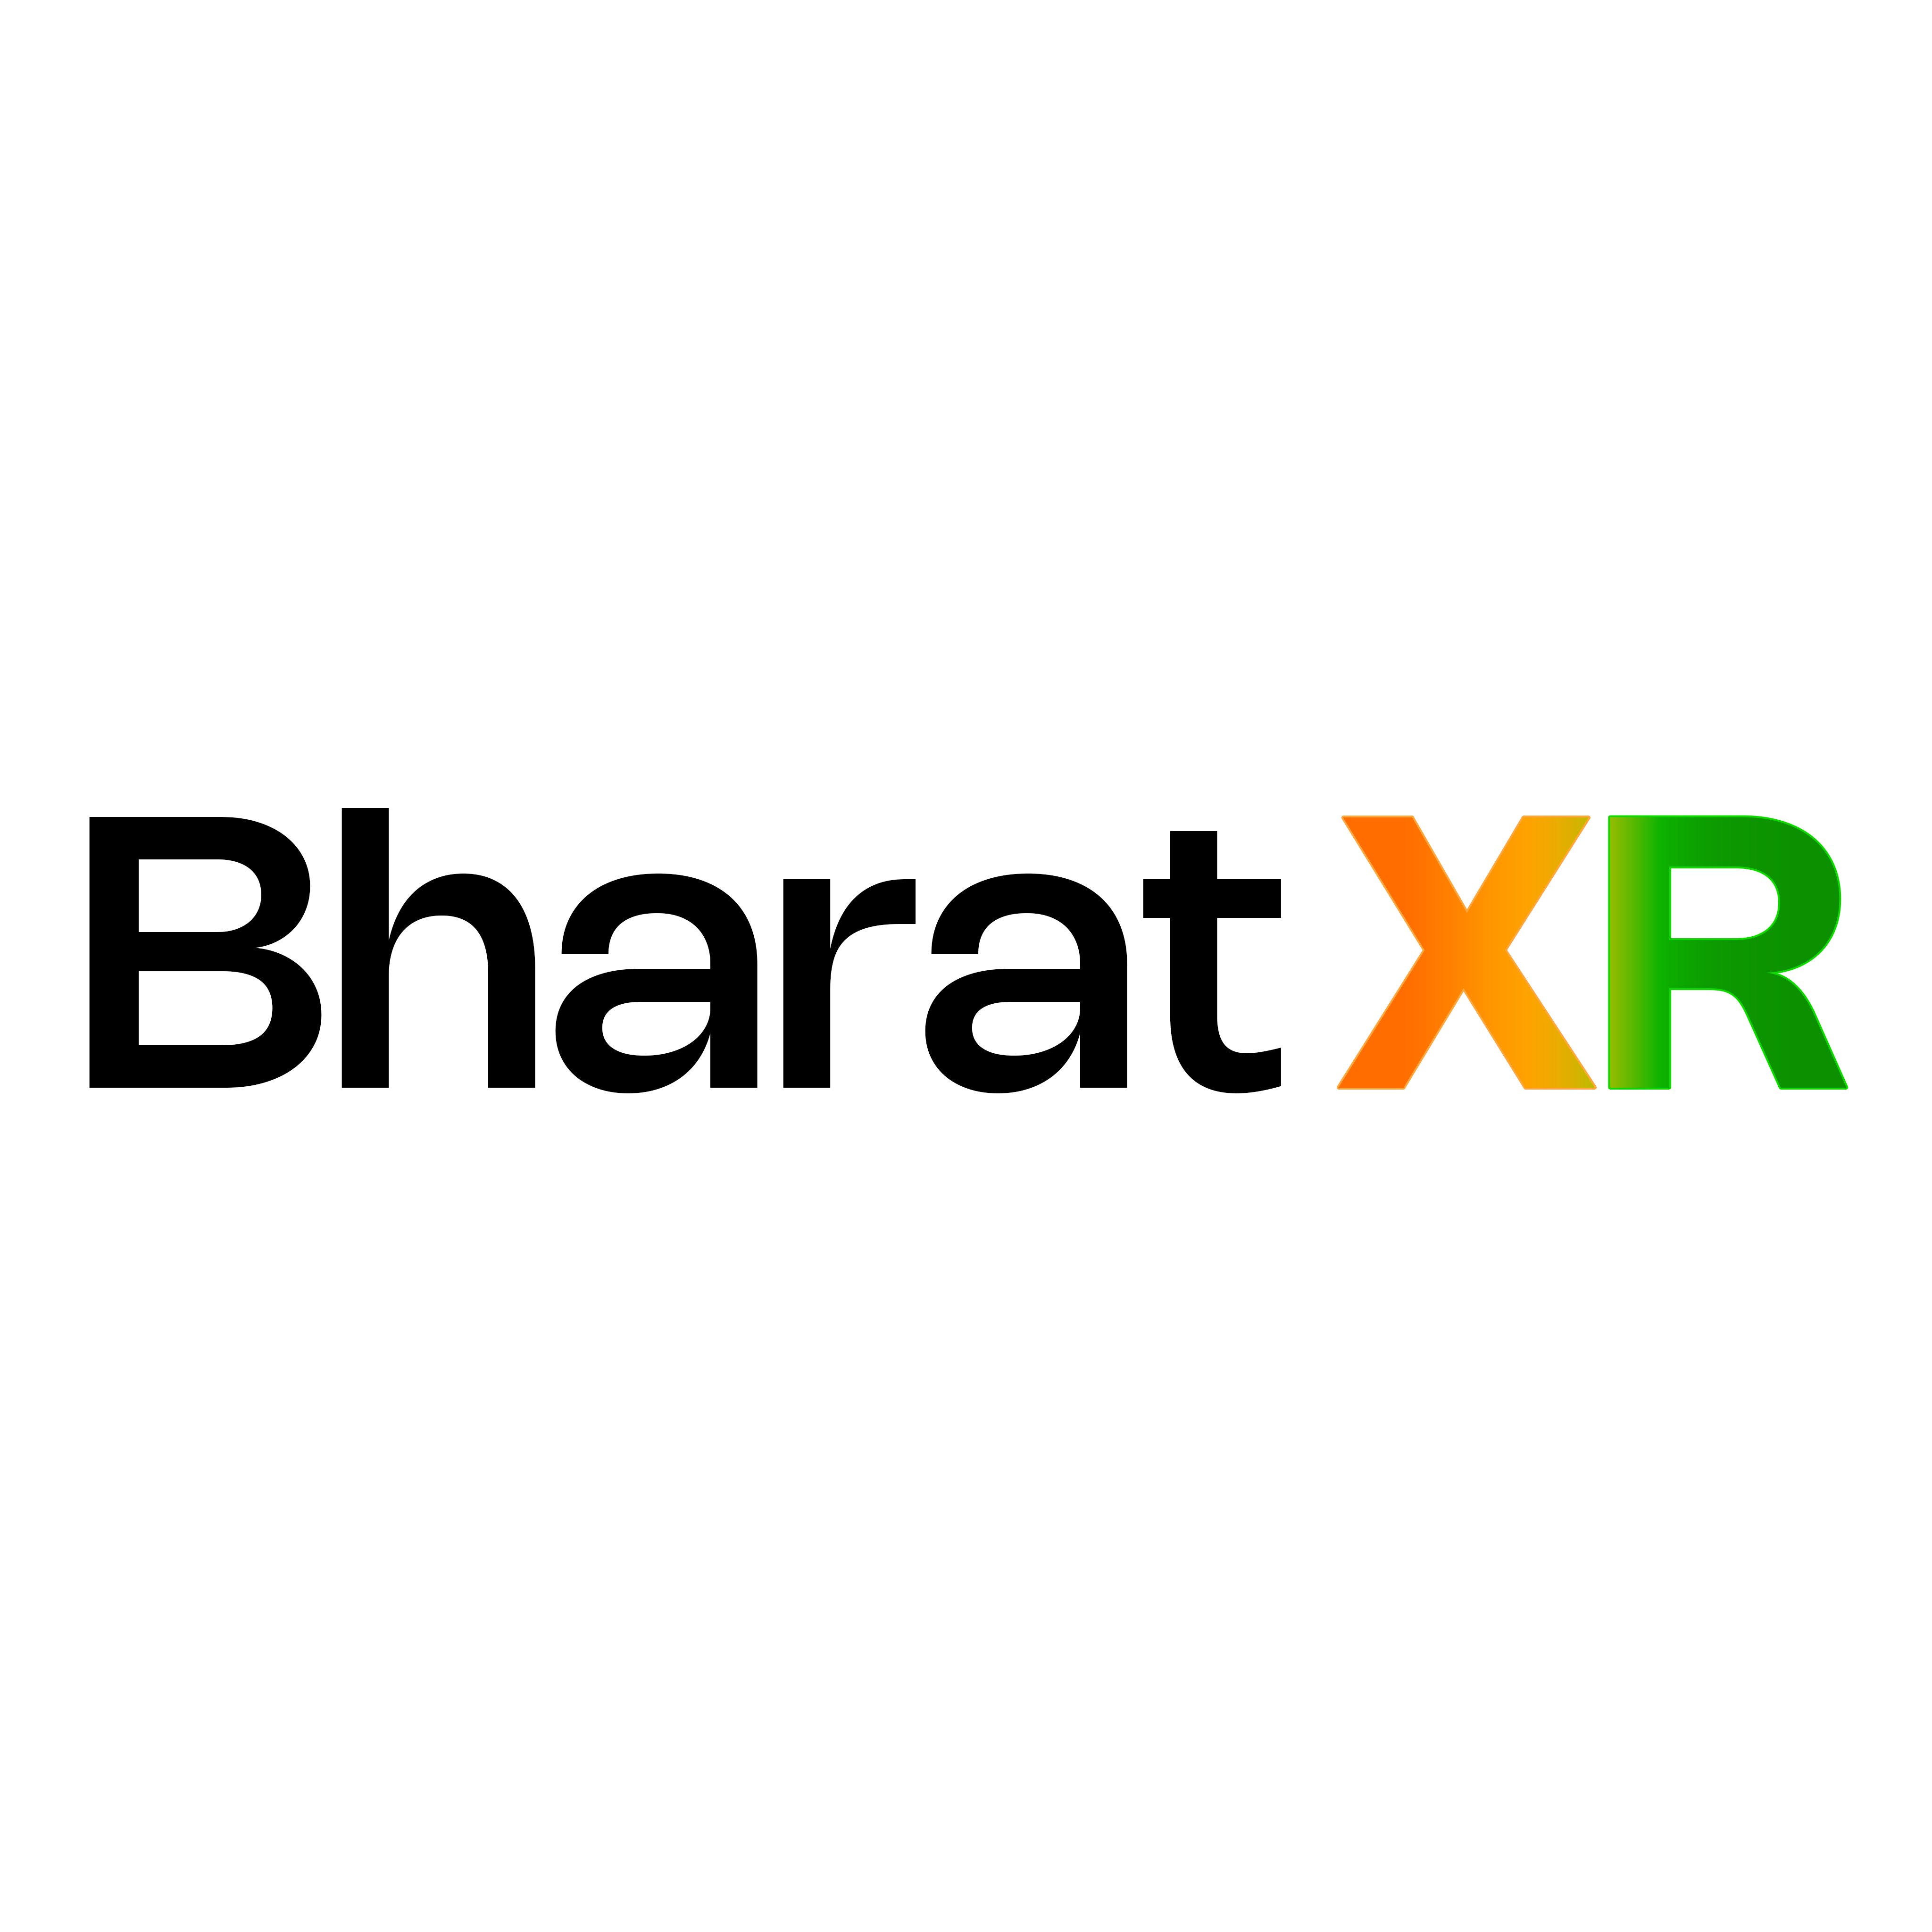 BharatXR LOGO